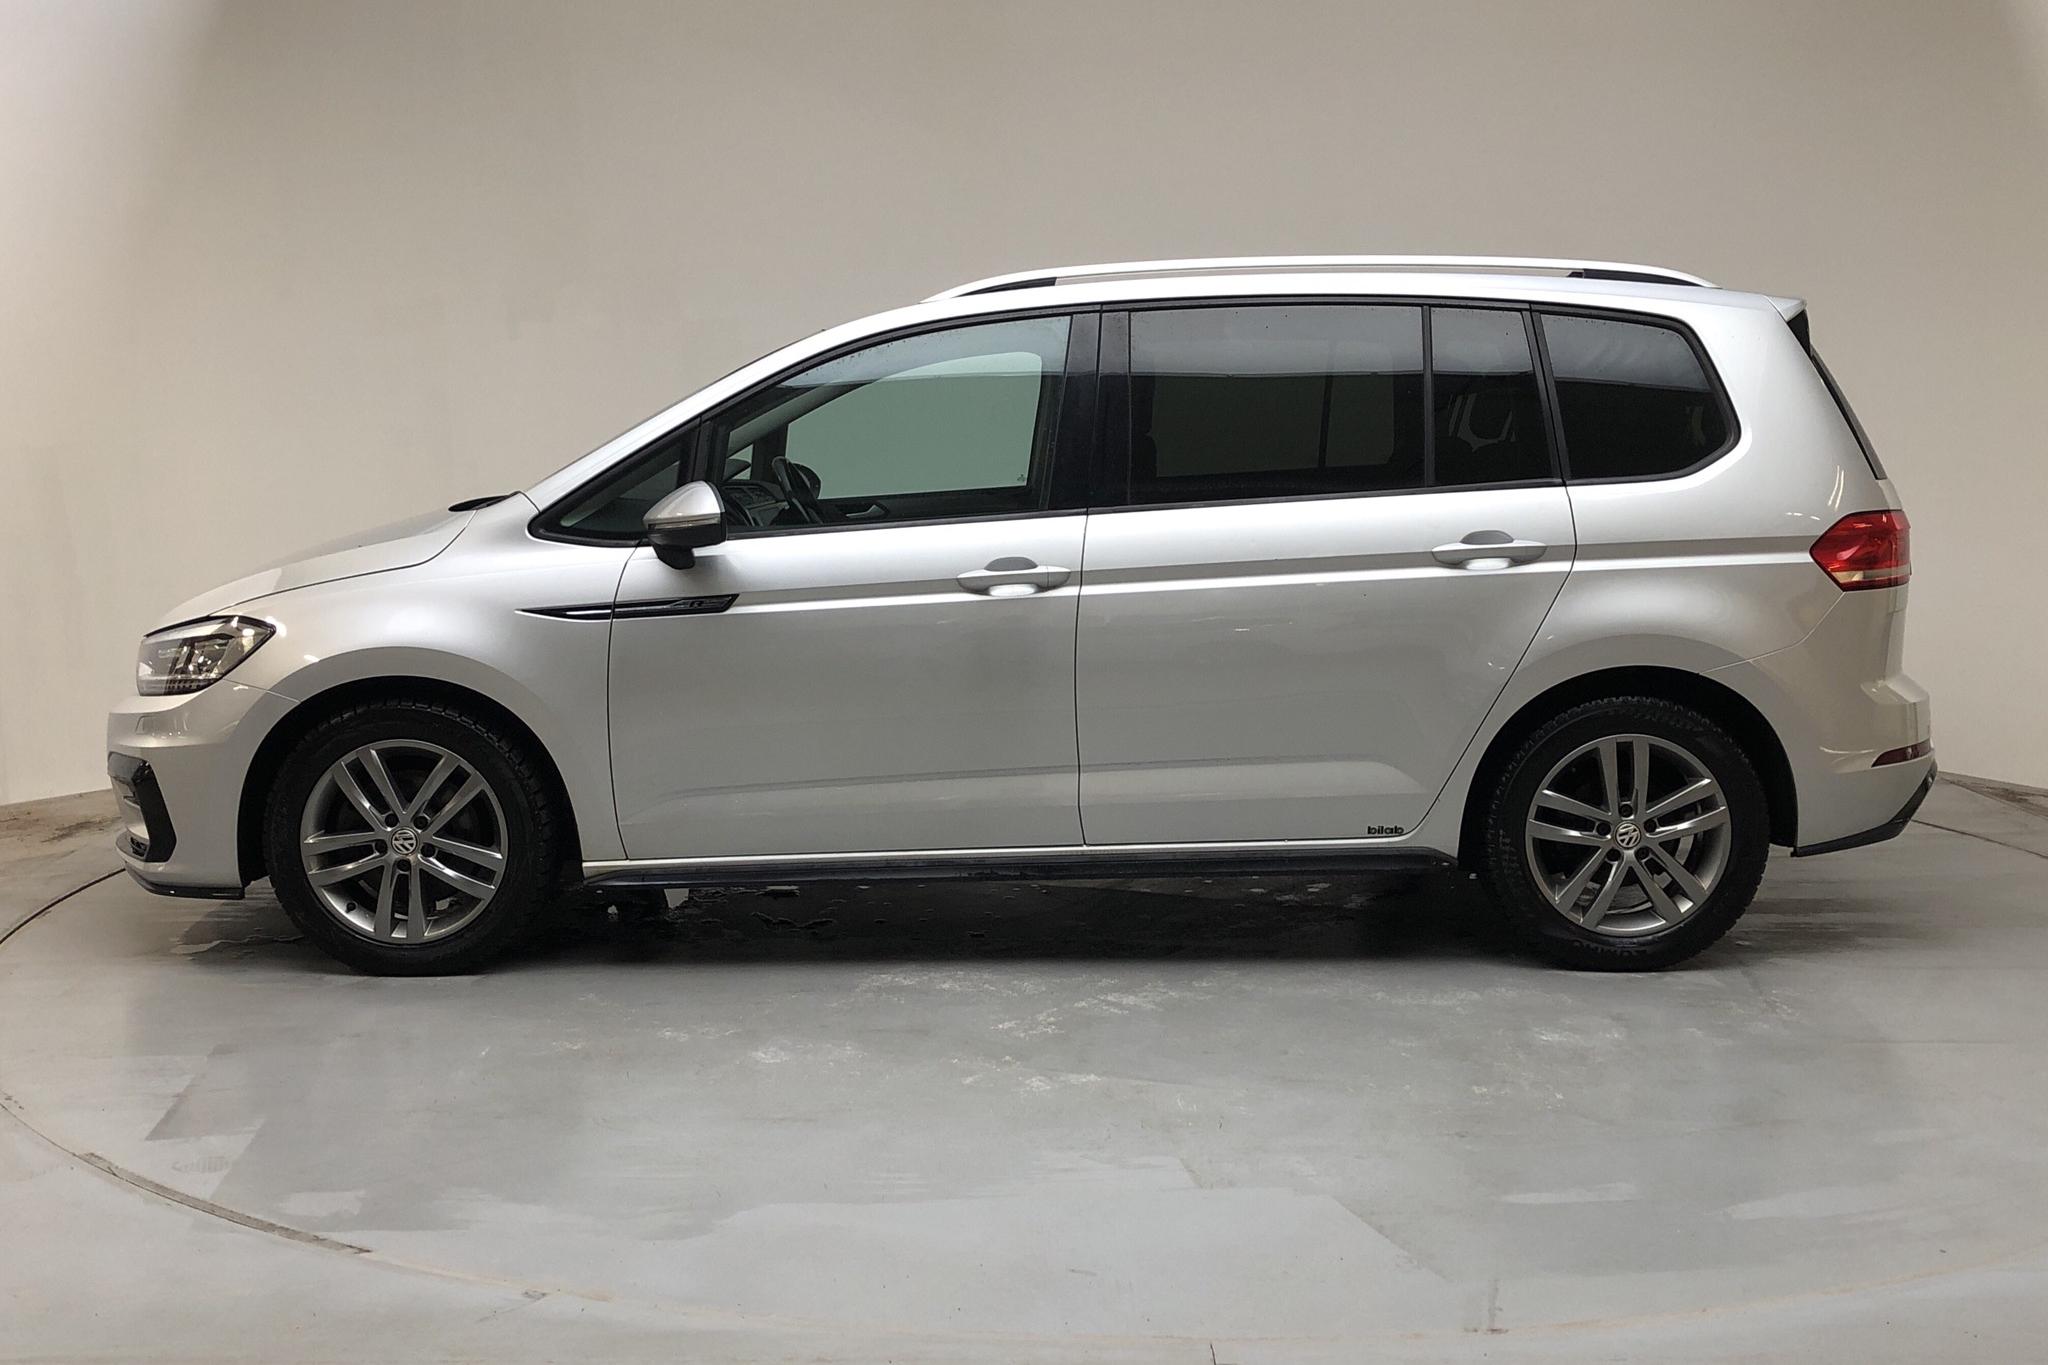 VW Touran 1.4 TSI (150hk) - 51 280 km - Automatic - silver - 2018